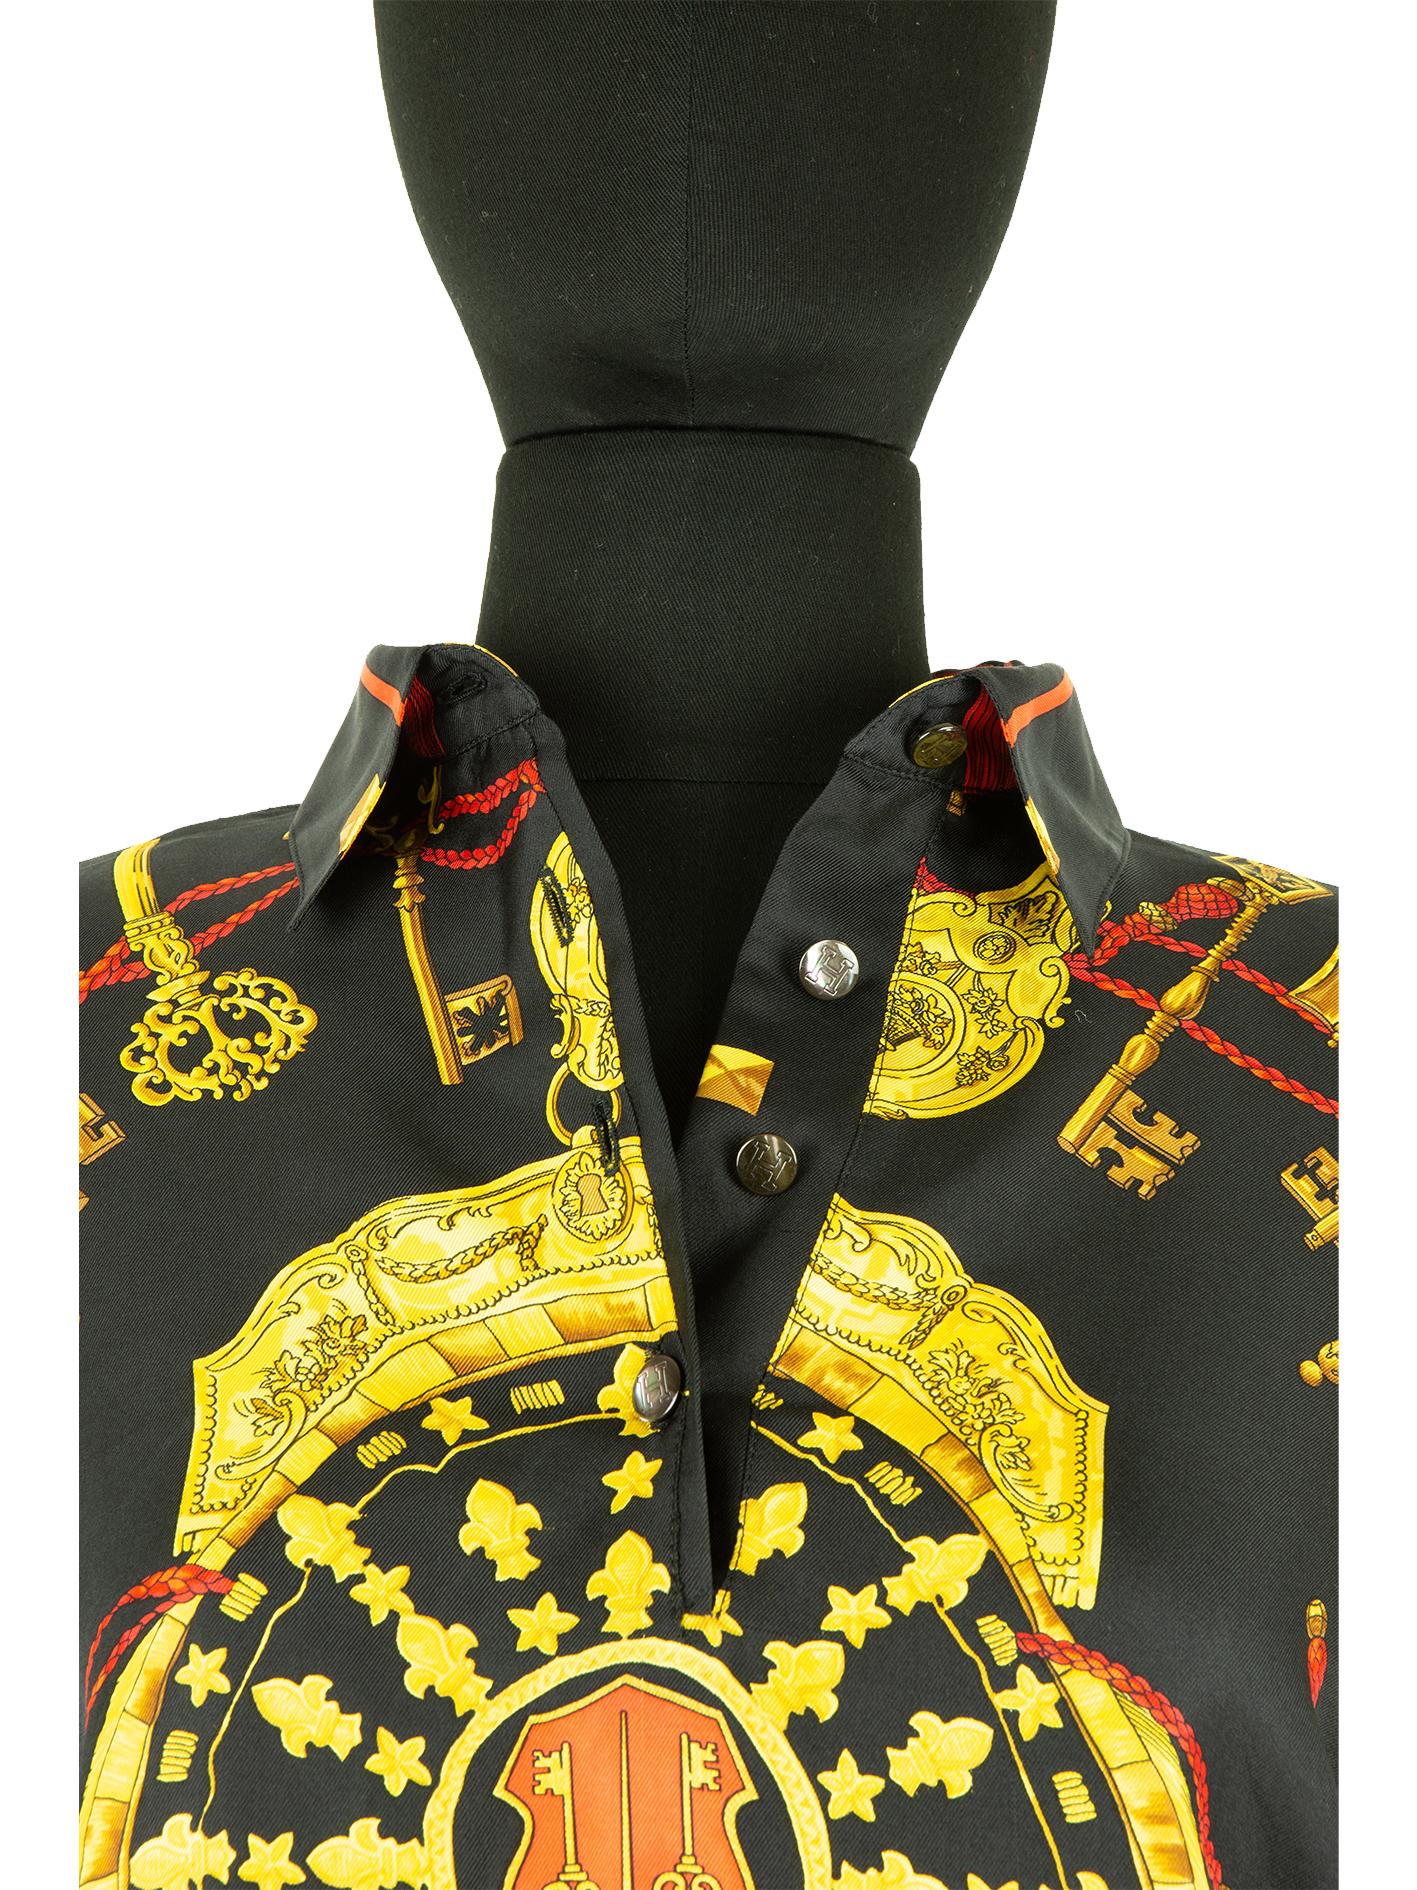 Top à manches longues Hermès des années 1990, imprimé de style baroque sur soie, avec une sélection de touches dorées posées sur un cordon tressé rouge, toutes entourant le bouclier doré au centre. Ce style d'impression est synonyme des créations